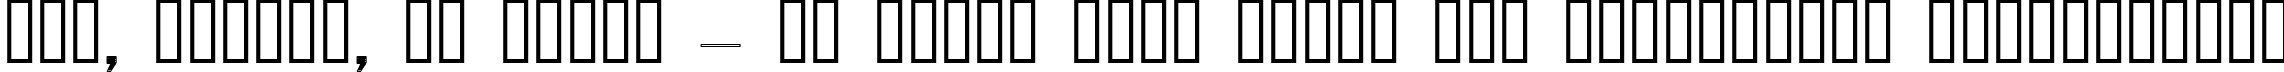 Пример написания шрифтом Pecot Lined Jewel текста на украинском